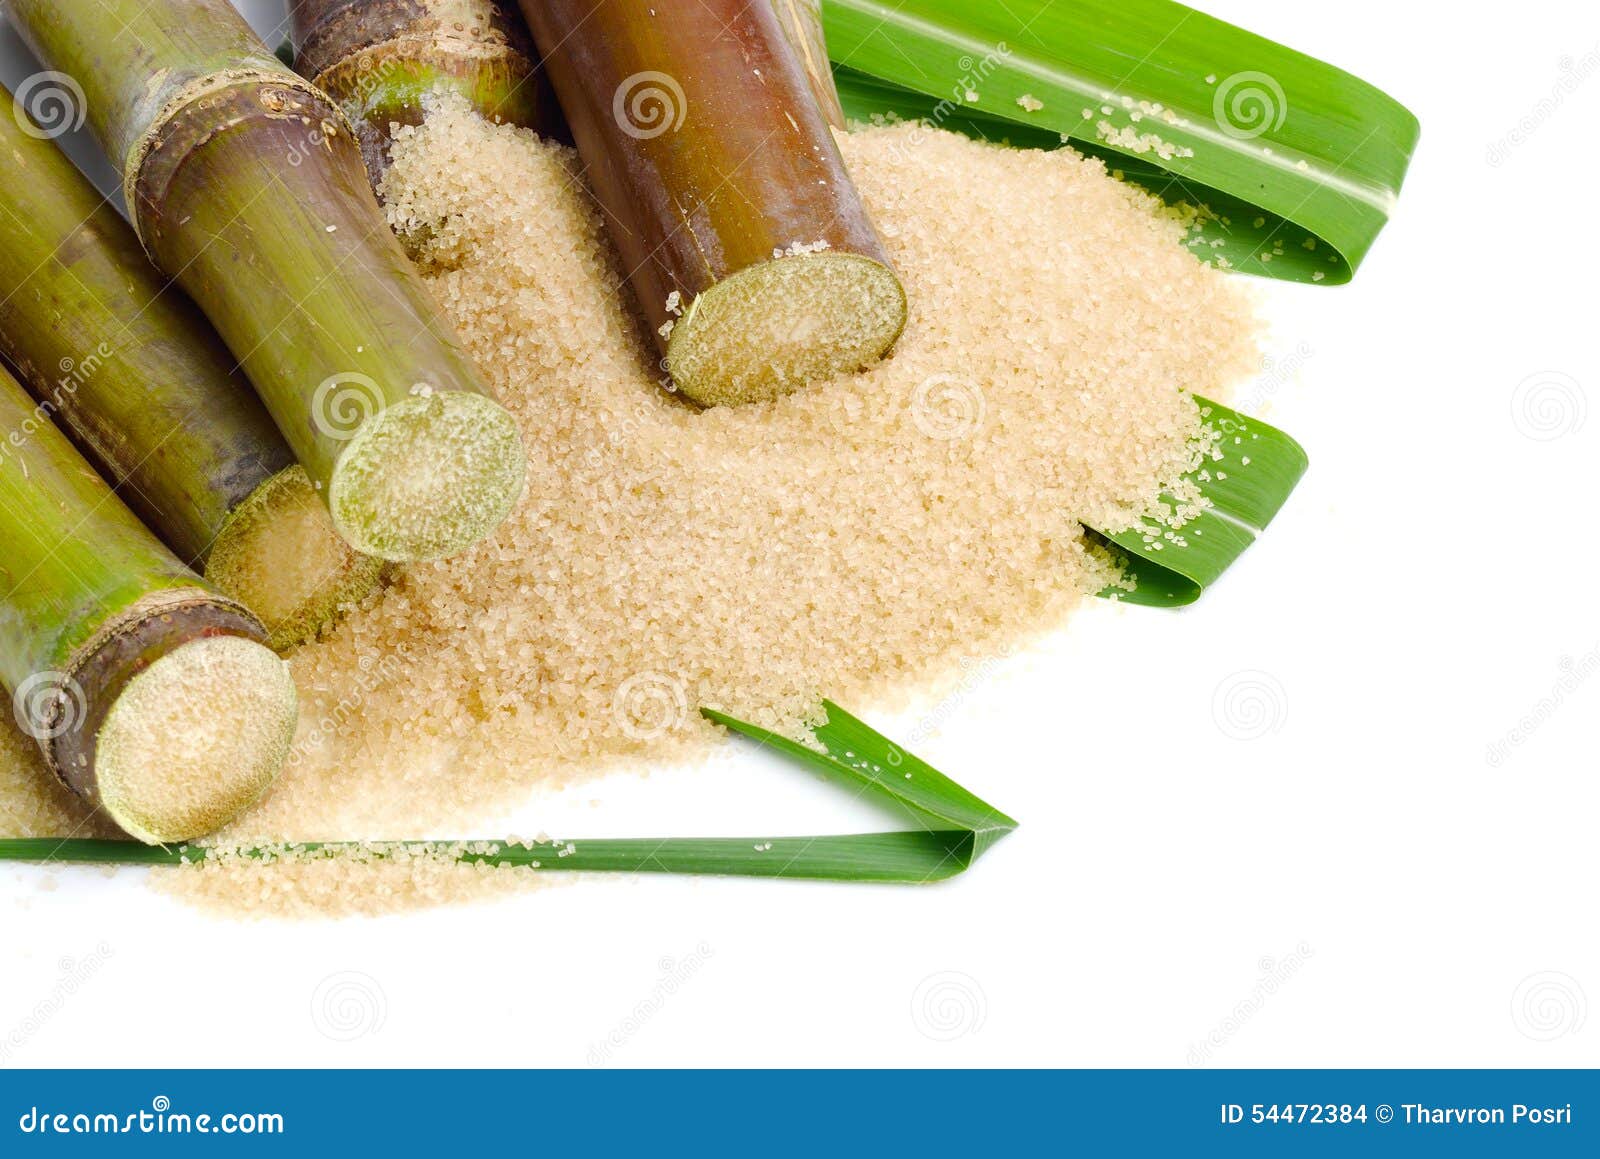 Сахарный тростник содержит. Сахарный тростник сахар. Сахар тростниковый. Сахар из тростника. Тростниковый сахар на белом фоне.